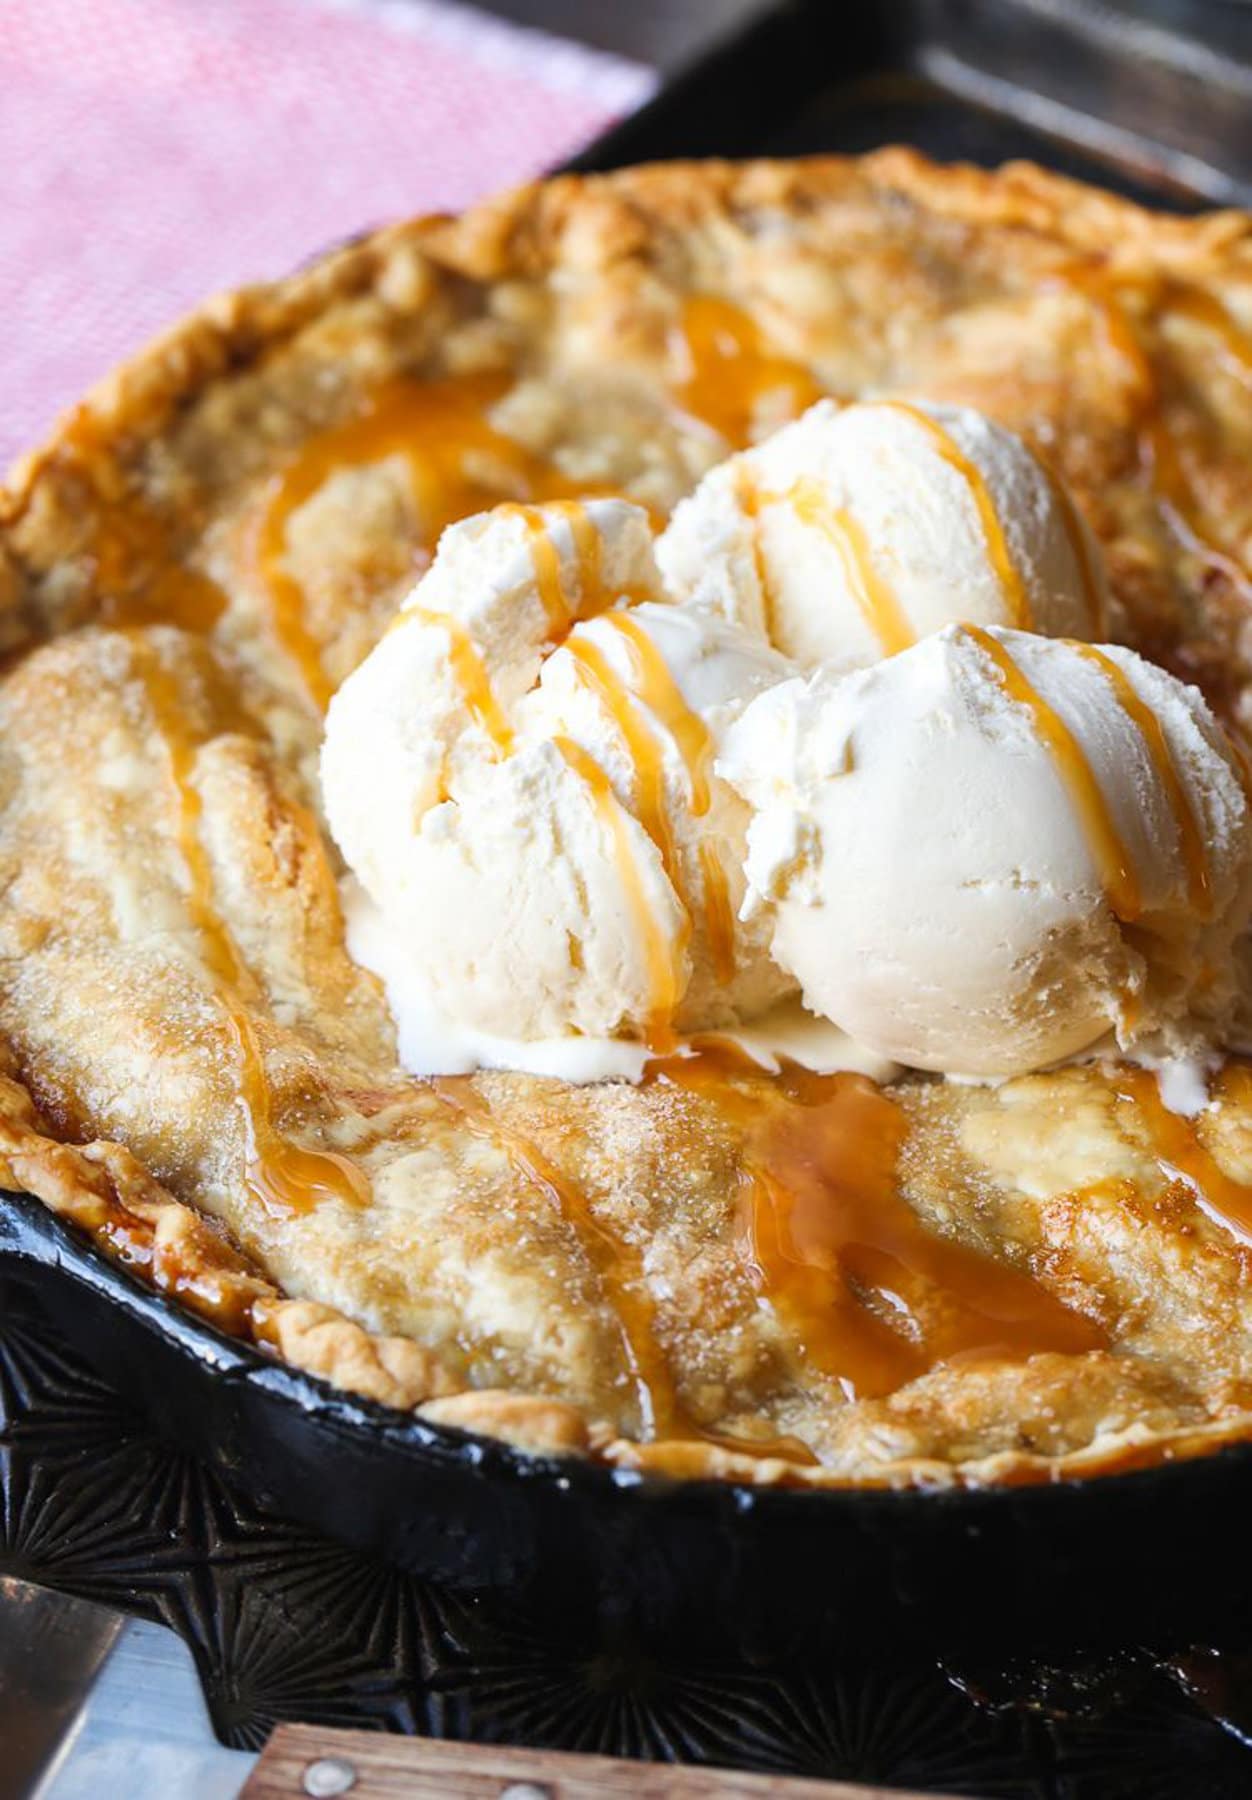 Ice cream on top of apple pie